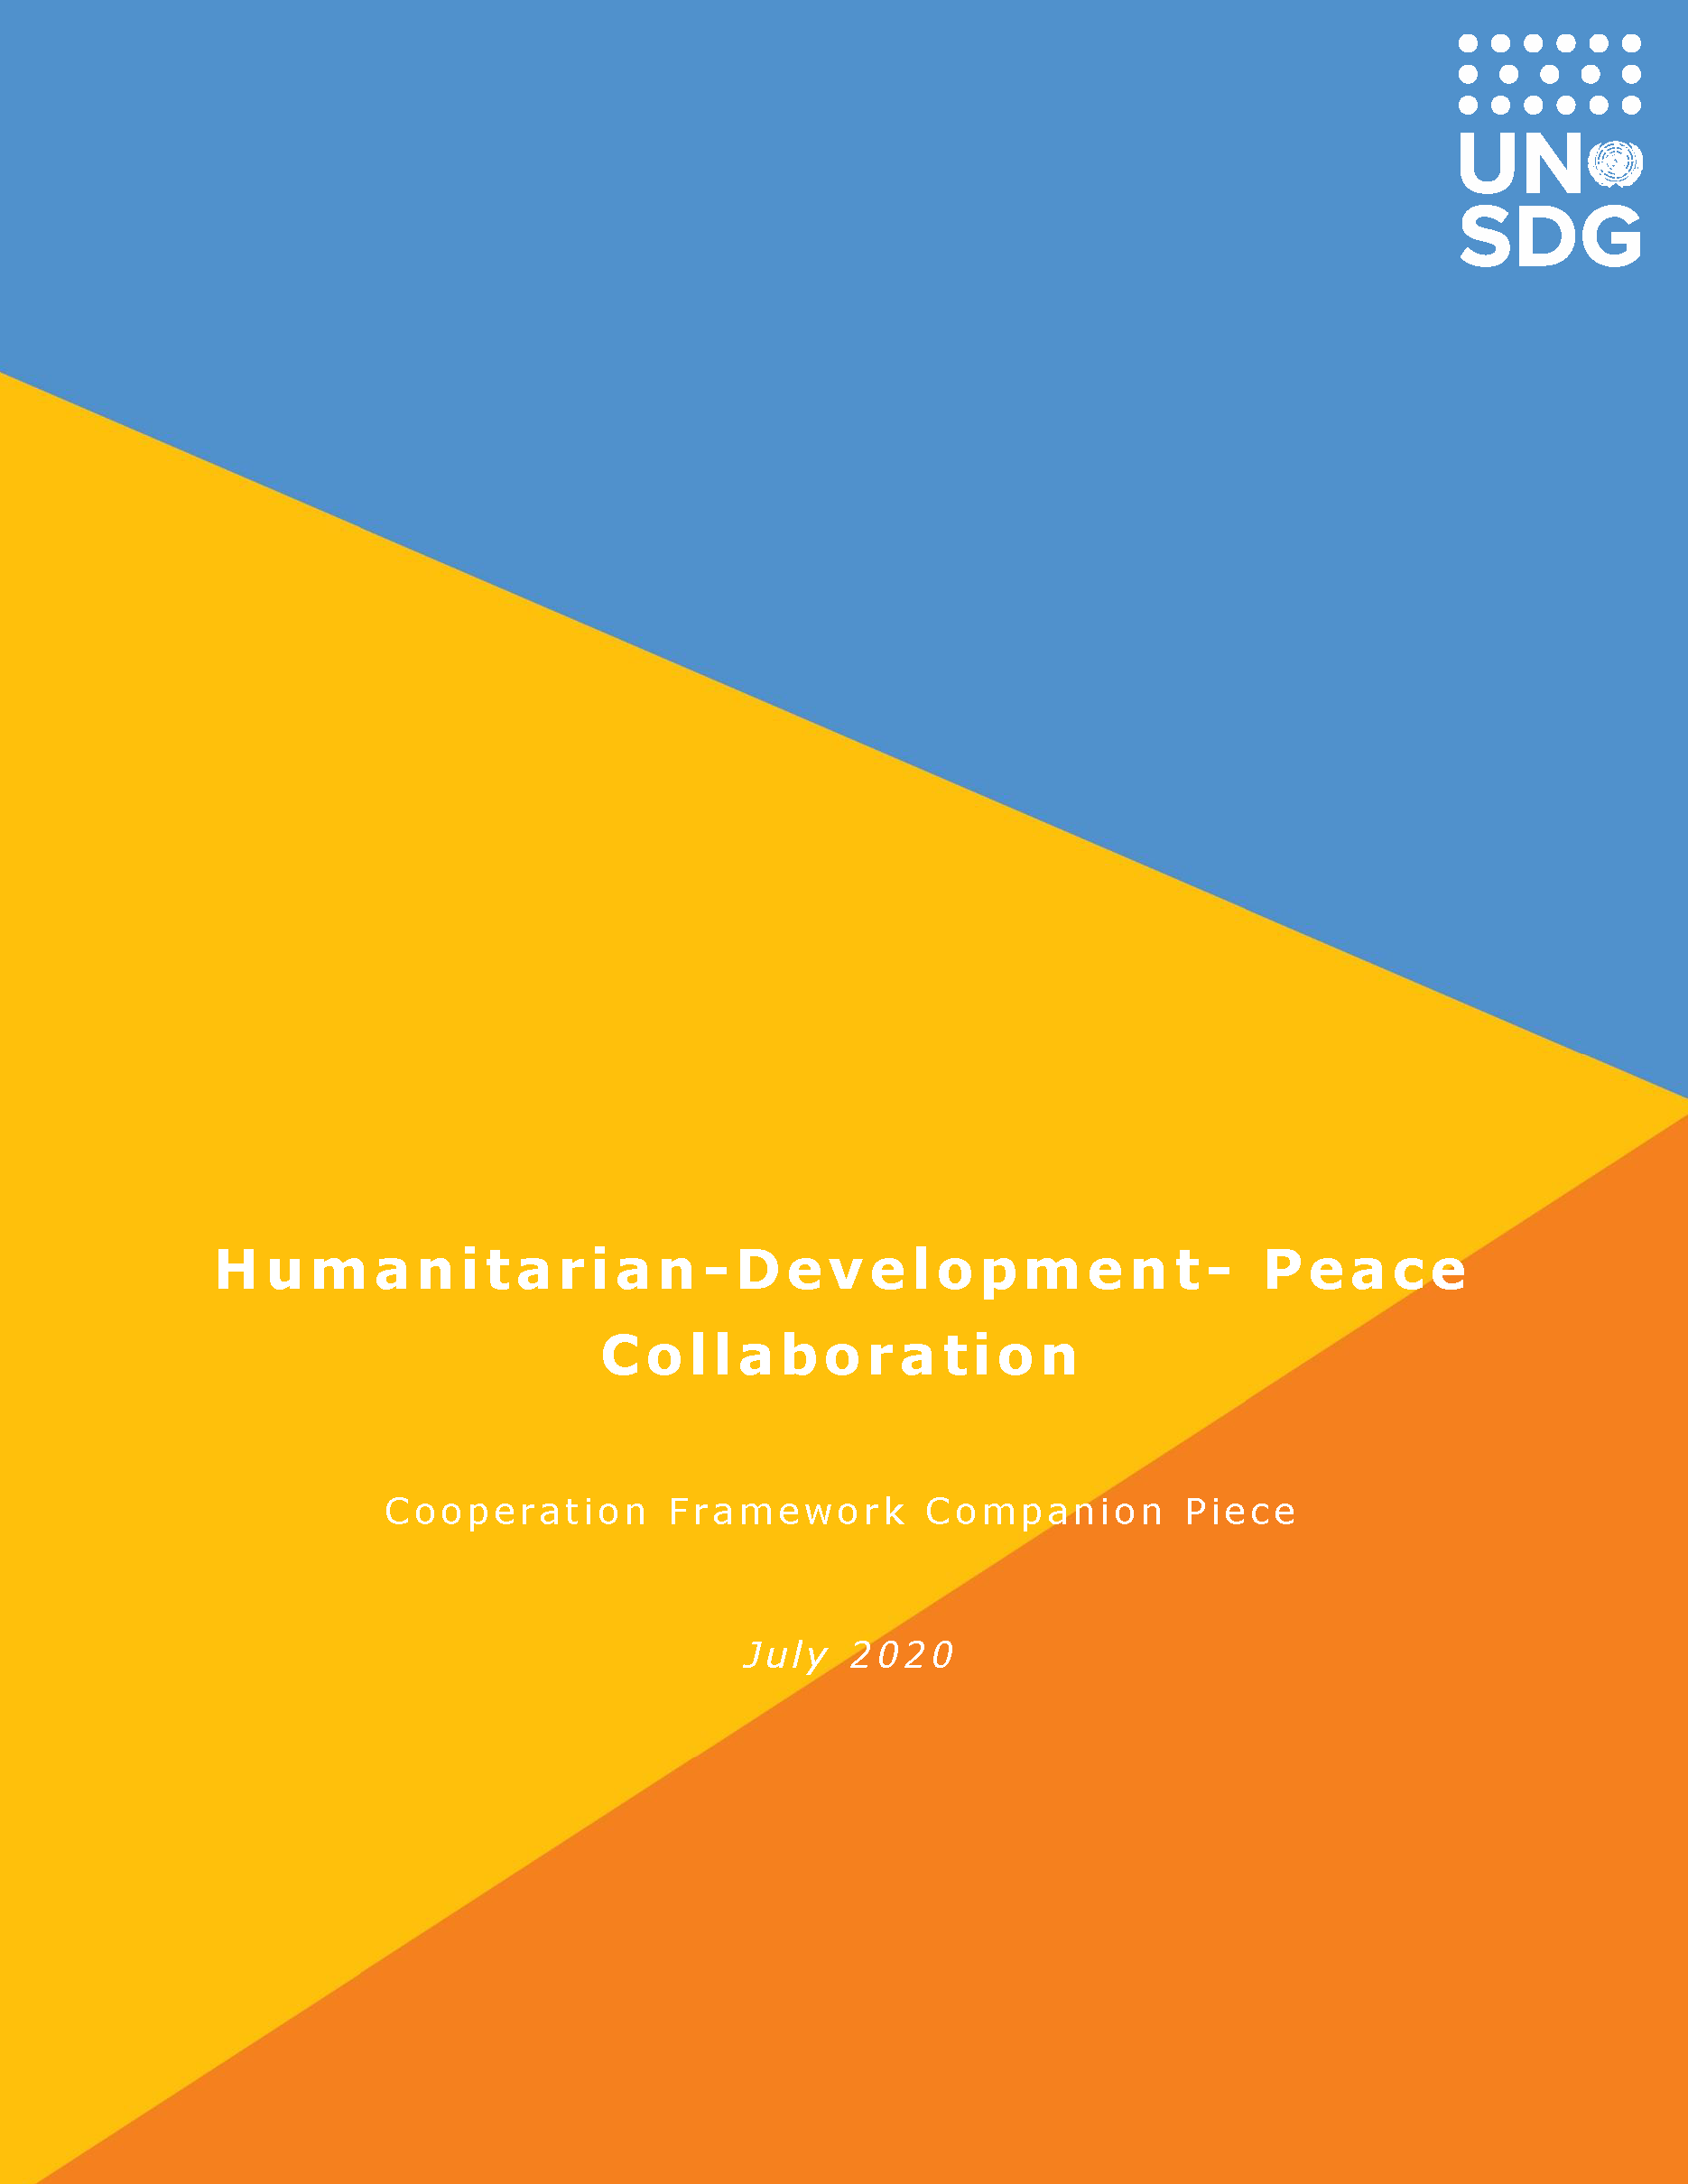 Page de couverture de la pièce d'accompagnement du cadre de coopération pour la collaboration entre l'aide humanitaire, le développement et la paix